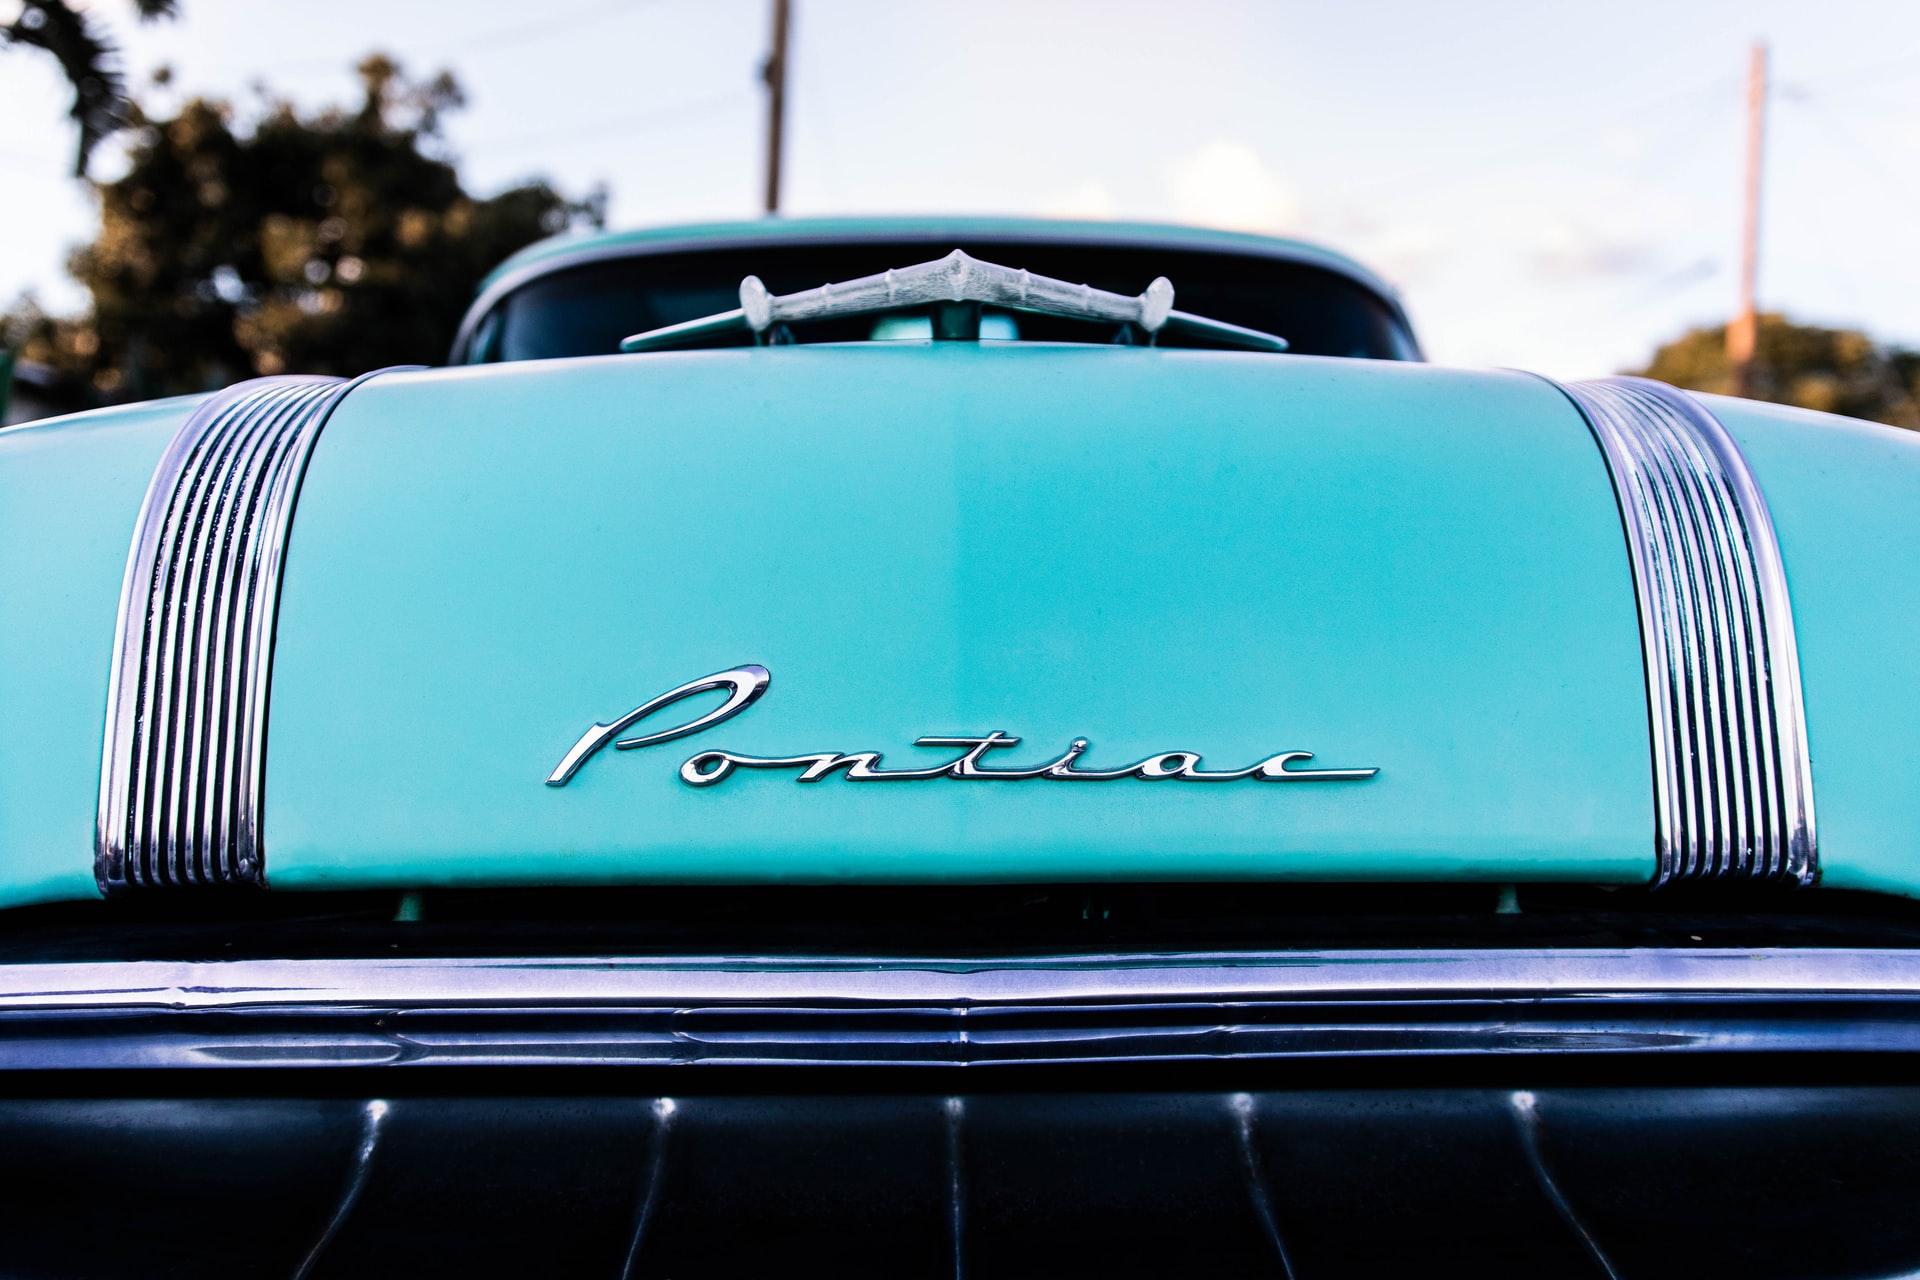 Does “sporty ‘80s Pontiac” sound familiar? It’s a crossword clue.